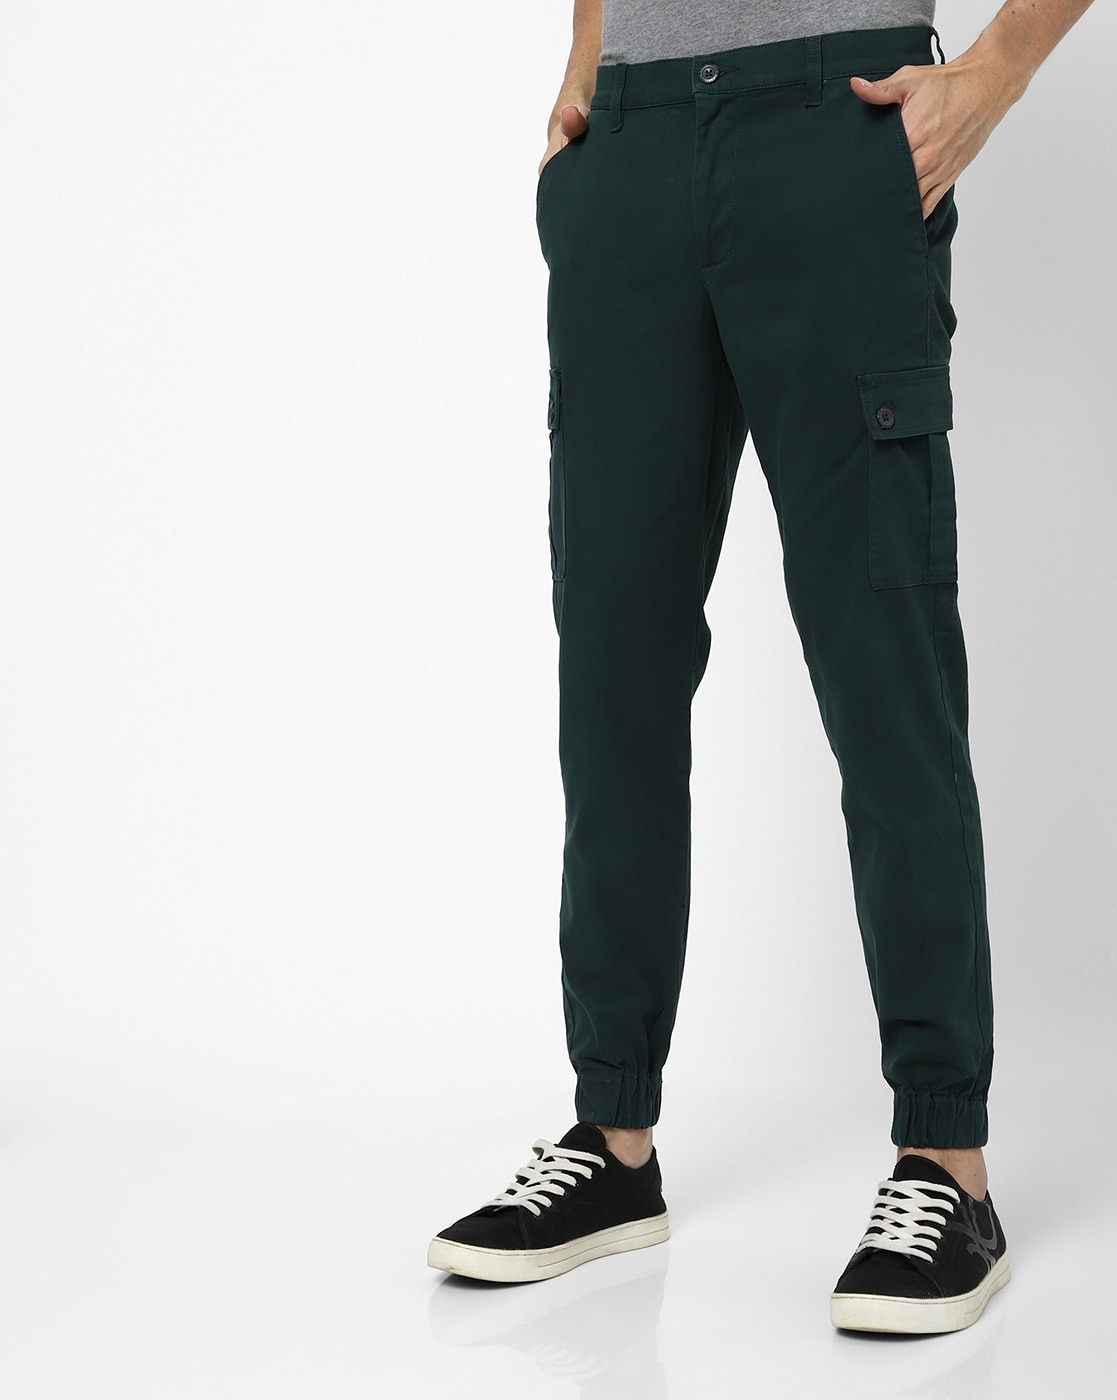 Threadbare Cargos  Buy Threadbare Men Green Linen Mix Cargo Trousers Online   Nykaa Fashion